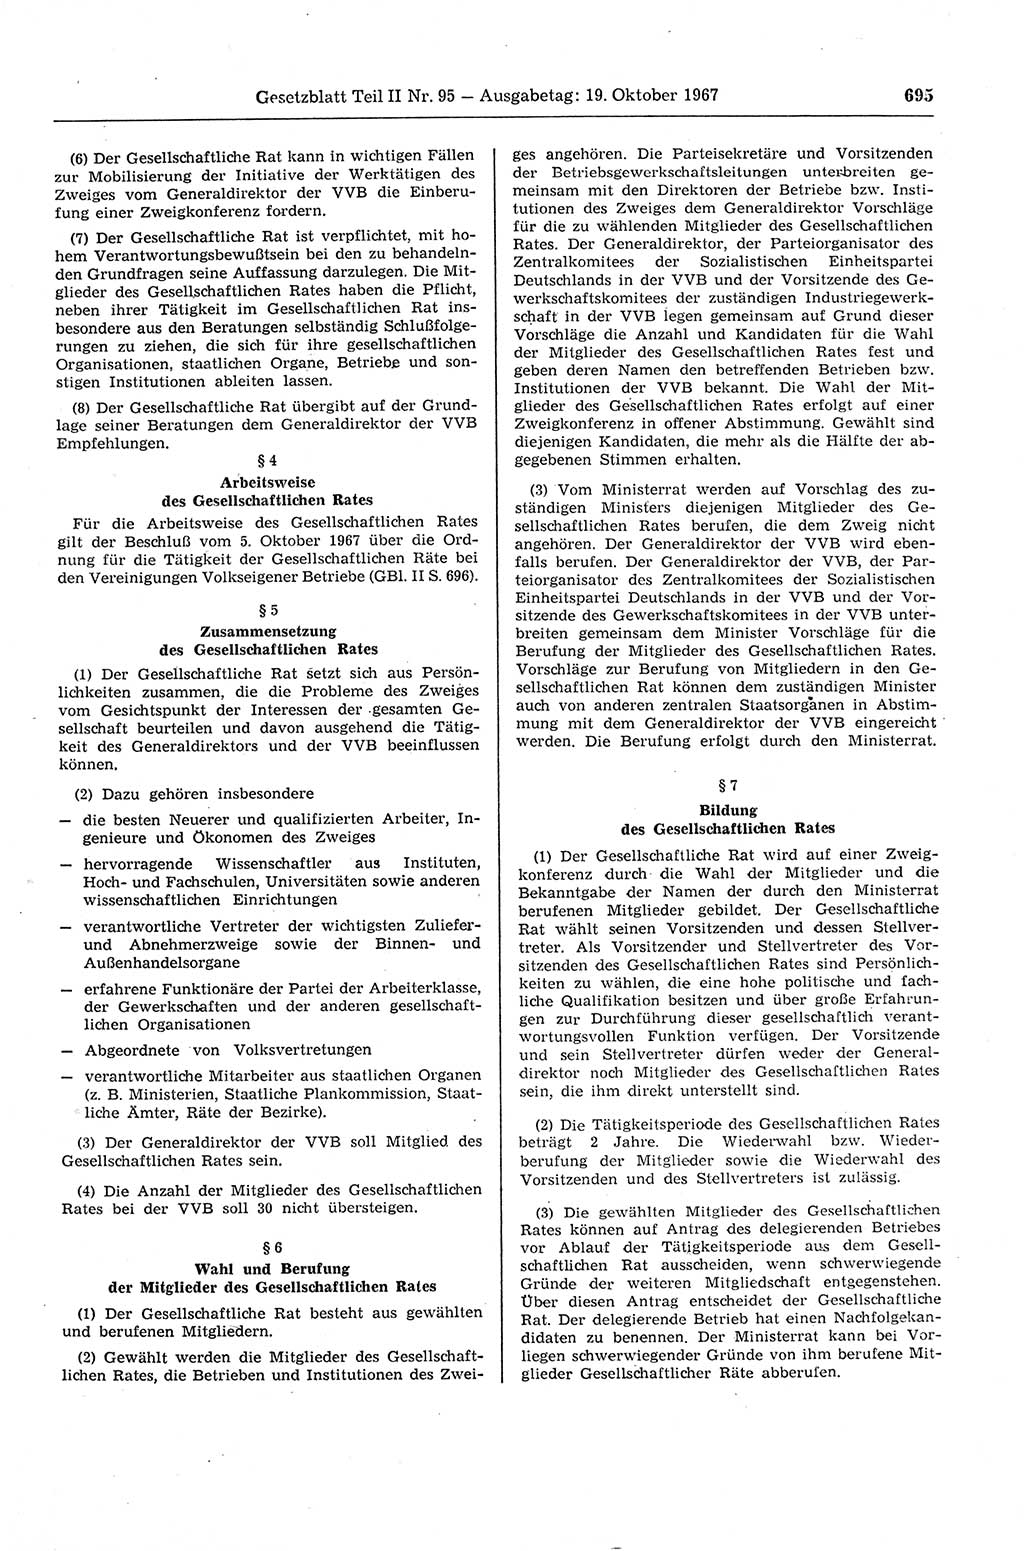 Gesetzblatt (GBl.) der Deutschen Demokratischen Republik (DDR) Teil ⅠⅠ 1967, Seite 695 (GBl. DDR ⅠⅠ 1967, S. 695)